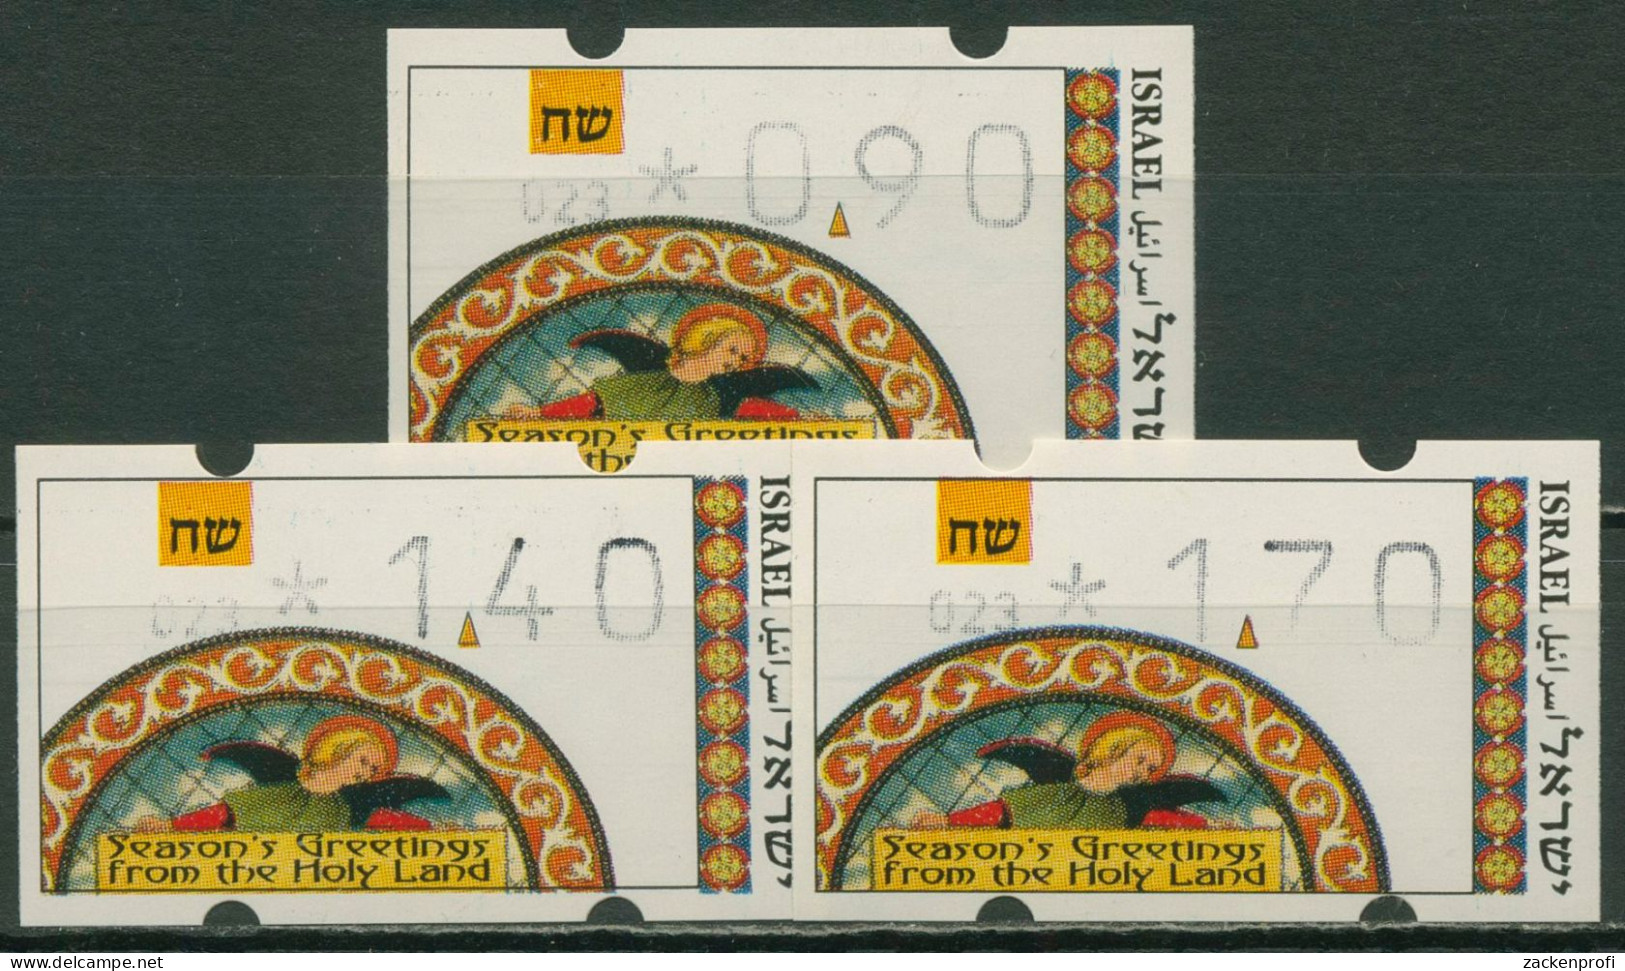 Israel ATM 1994 Weihnachten, Automat 023, Satz 3 Werte, ATM 24.2 S1 Postfrisch - Franking Labels